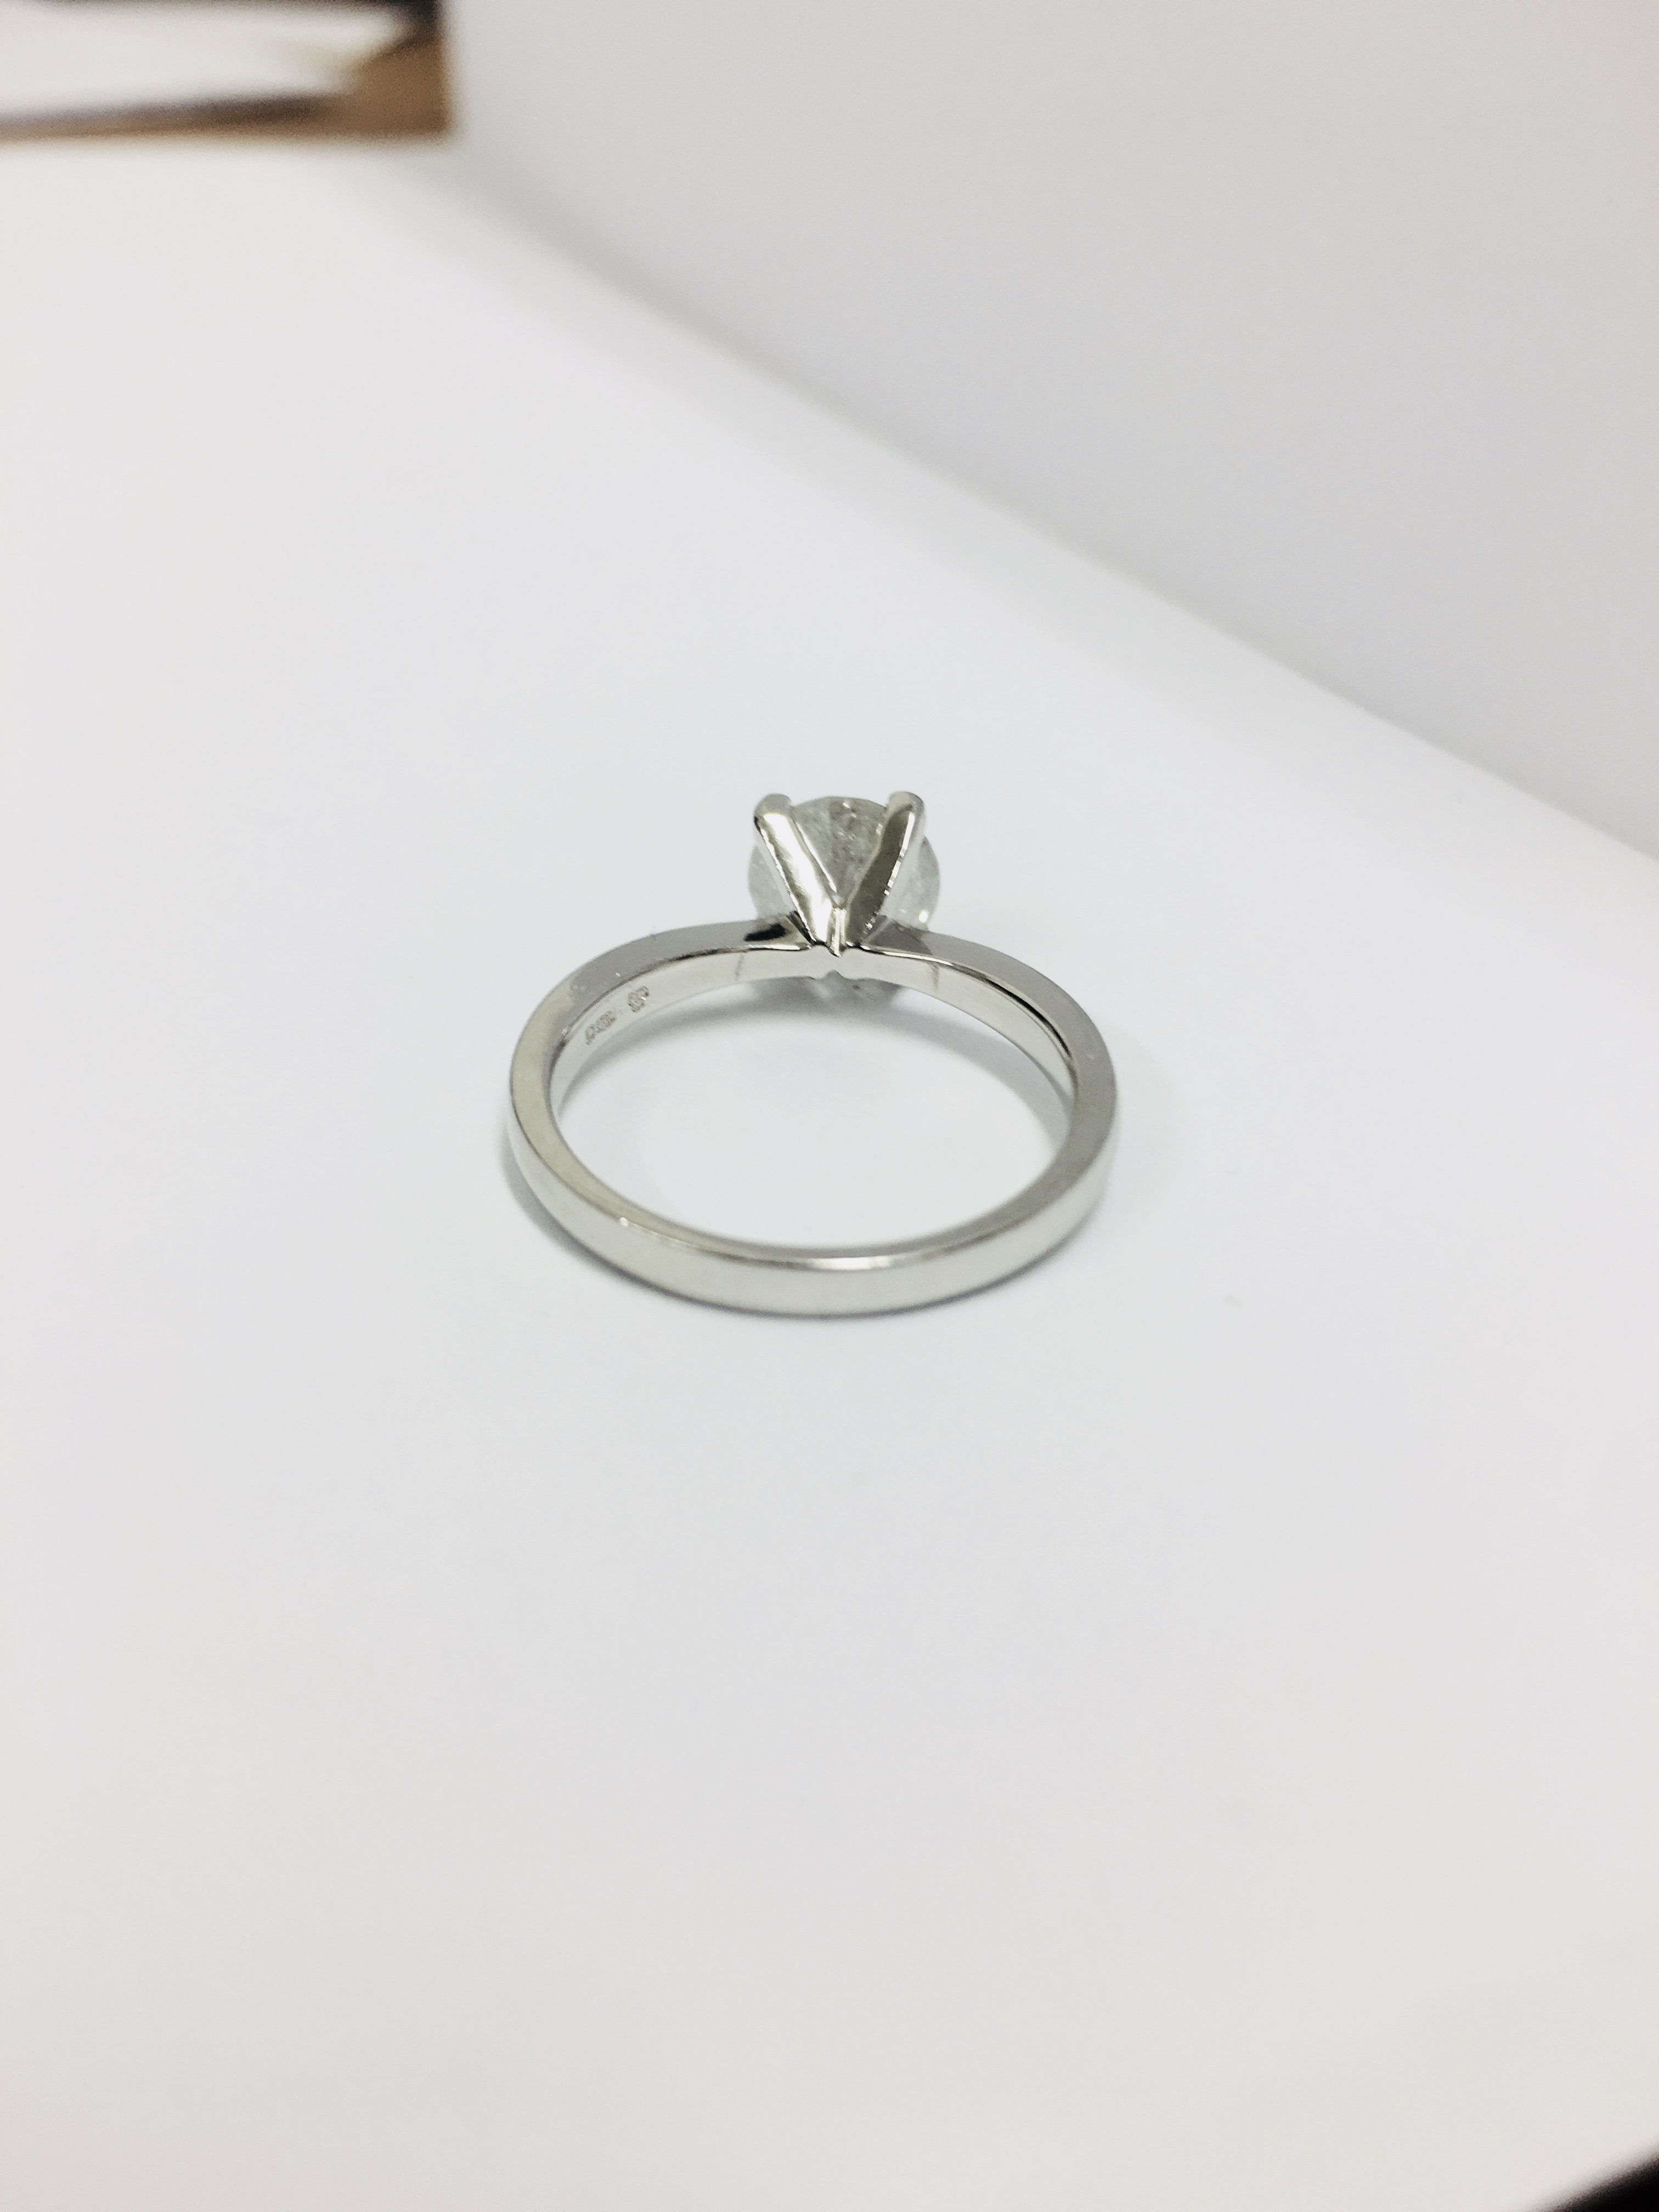 1.50ct diamond solitaire ring set in platinum - Image 19 of 35